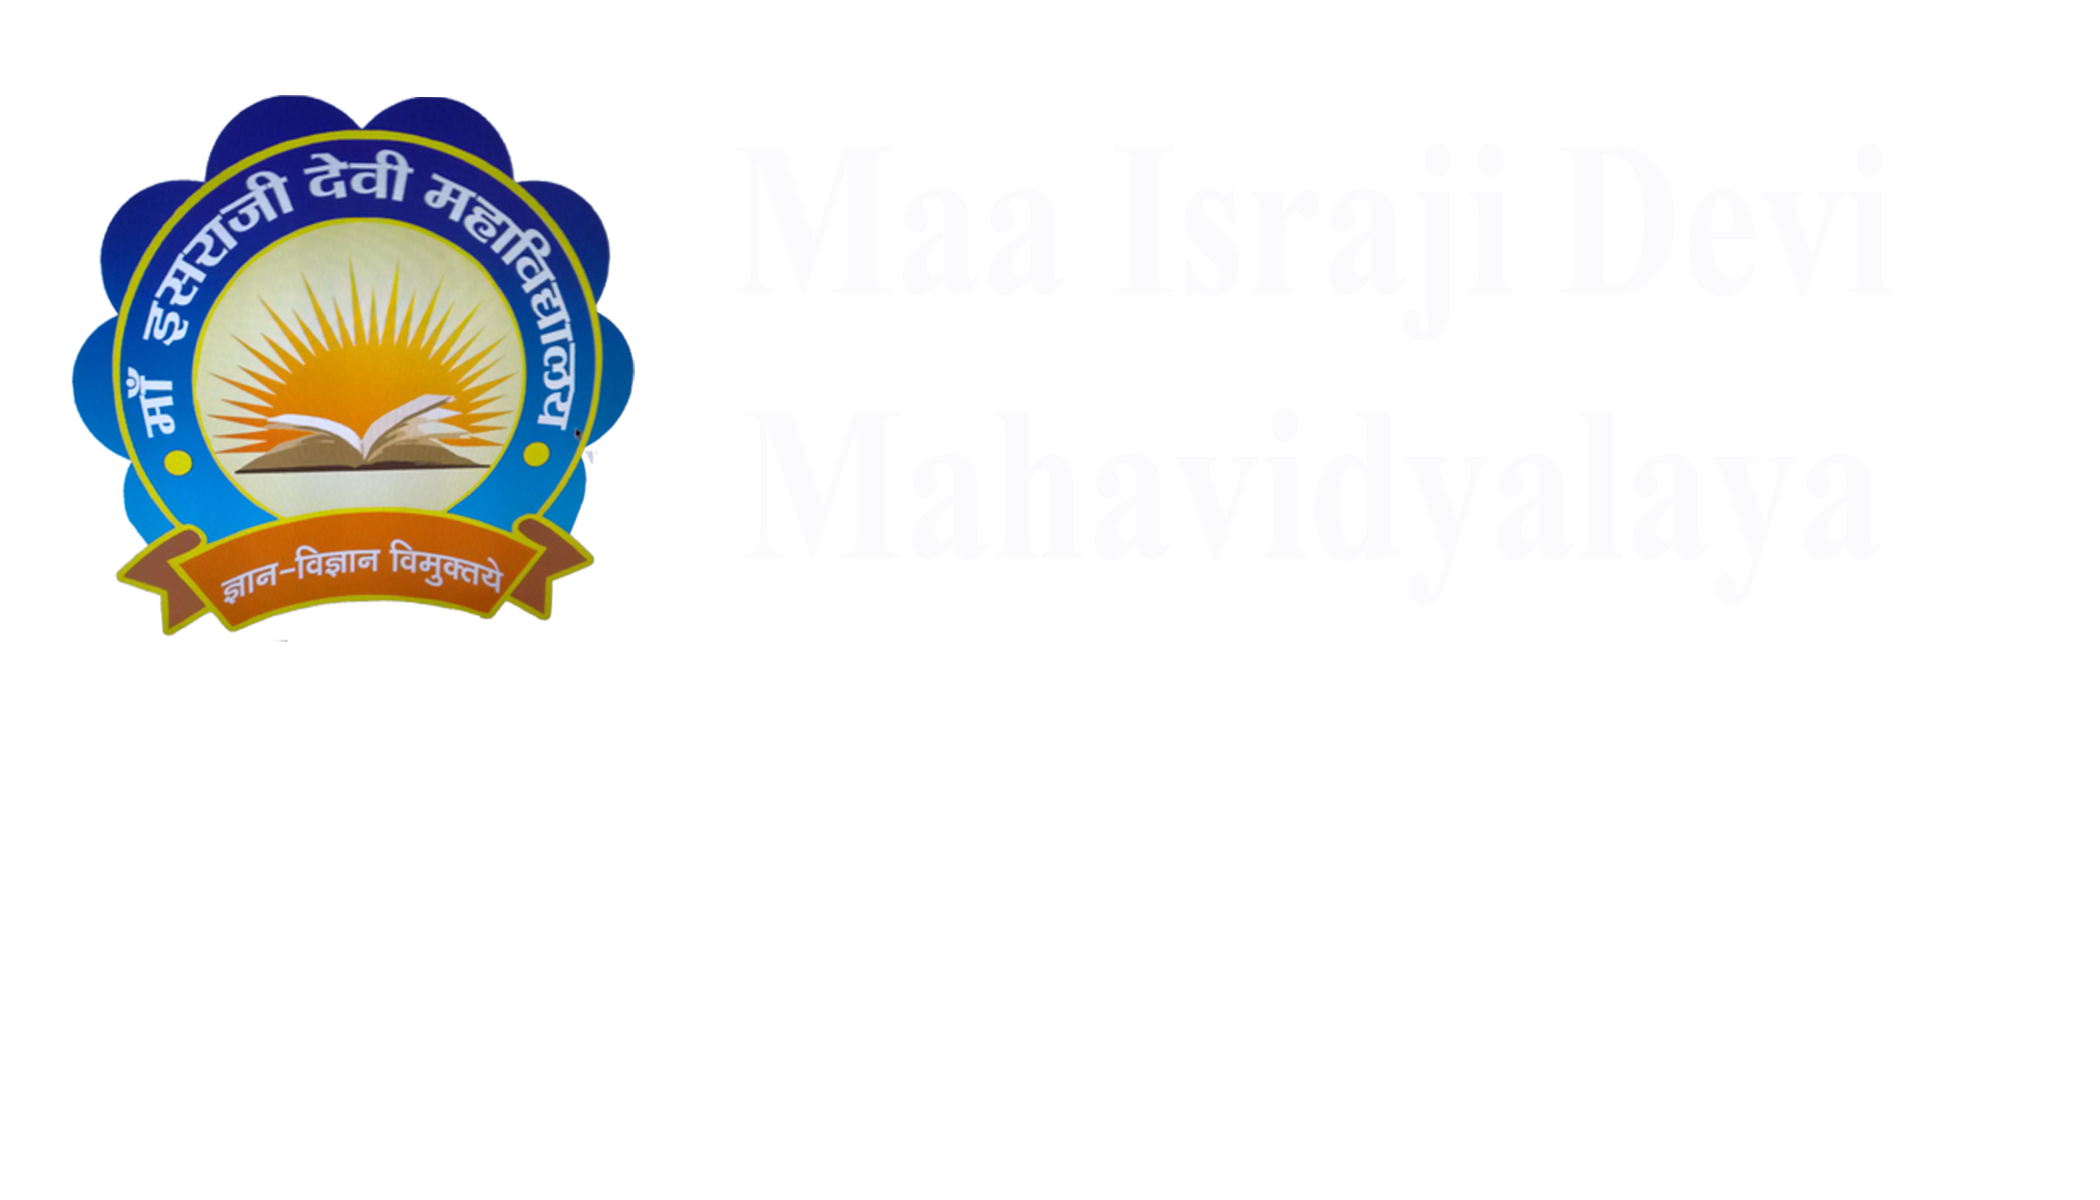 Maa Israji Devi Mahavidyalaya